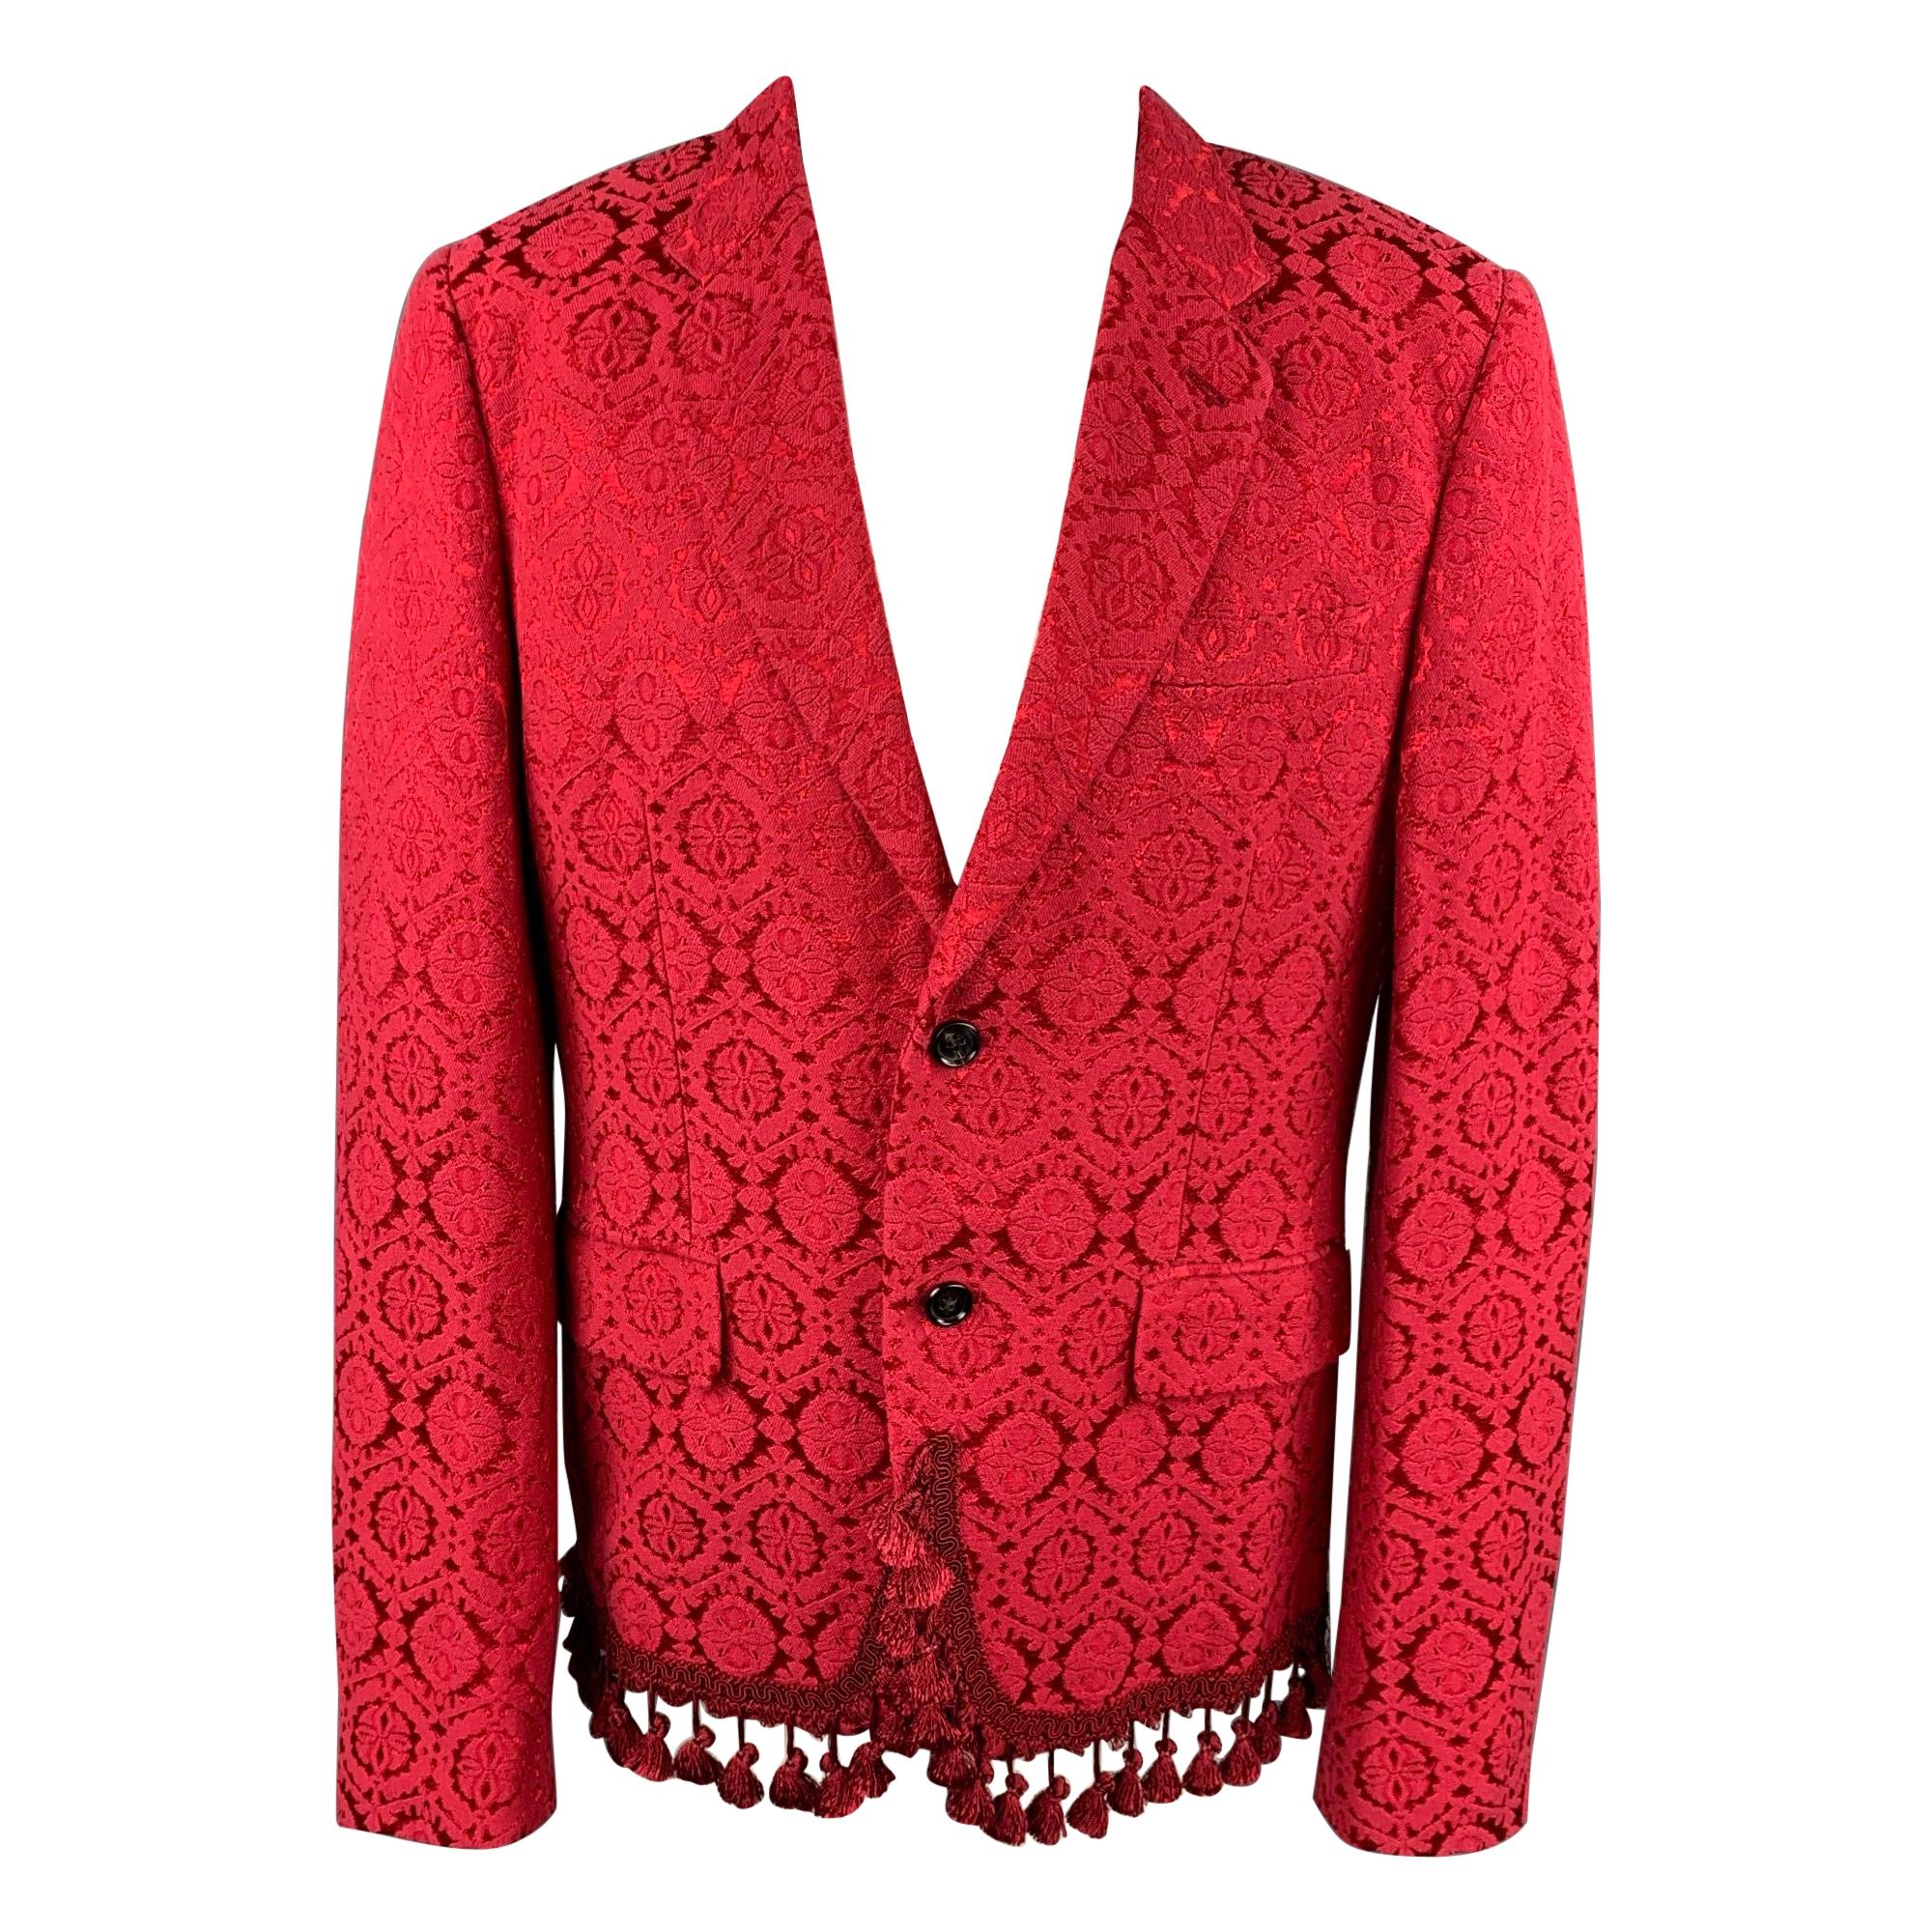 COMME des GARCONS HOMME PLUS Size XL Red Jacquard Cotton Blend Jacket